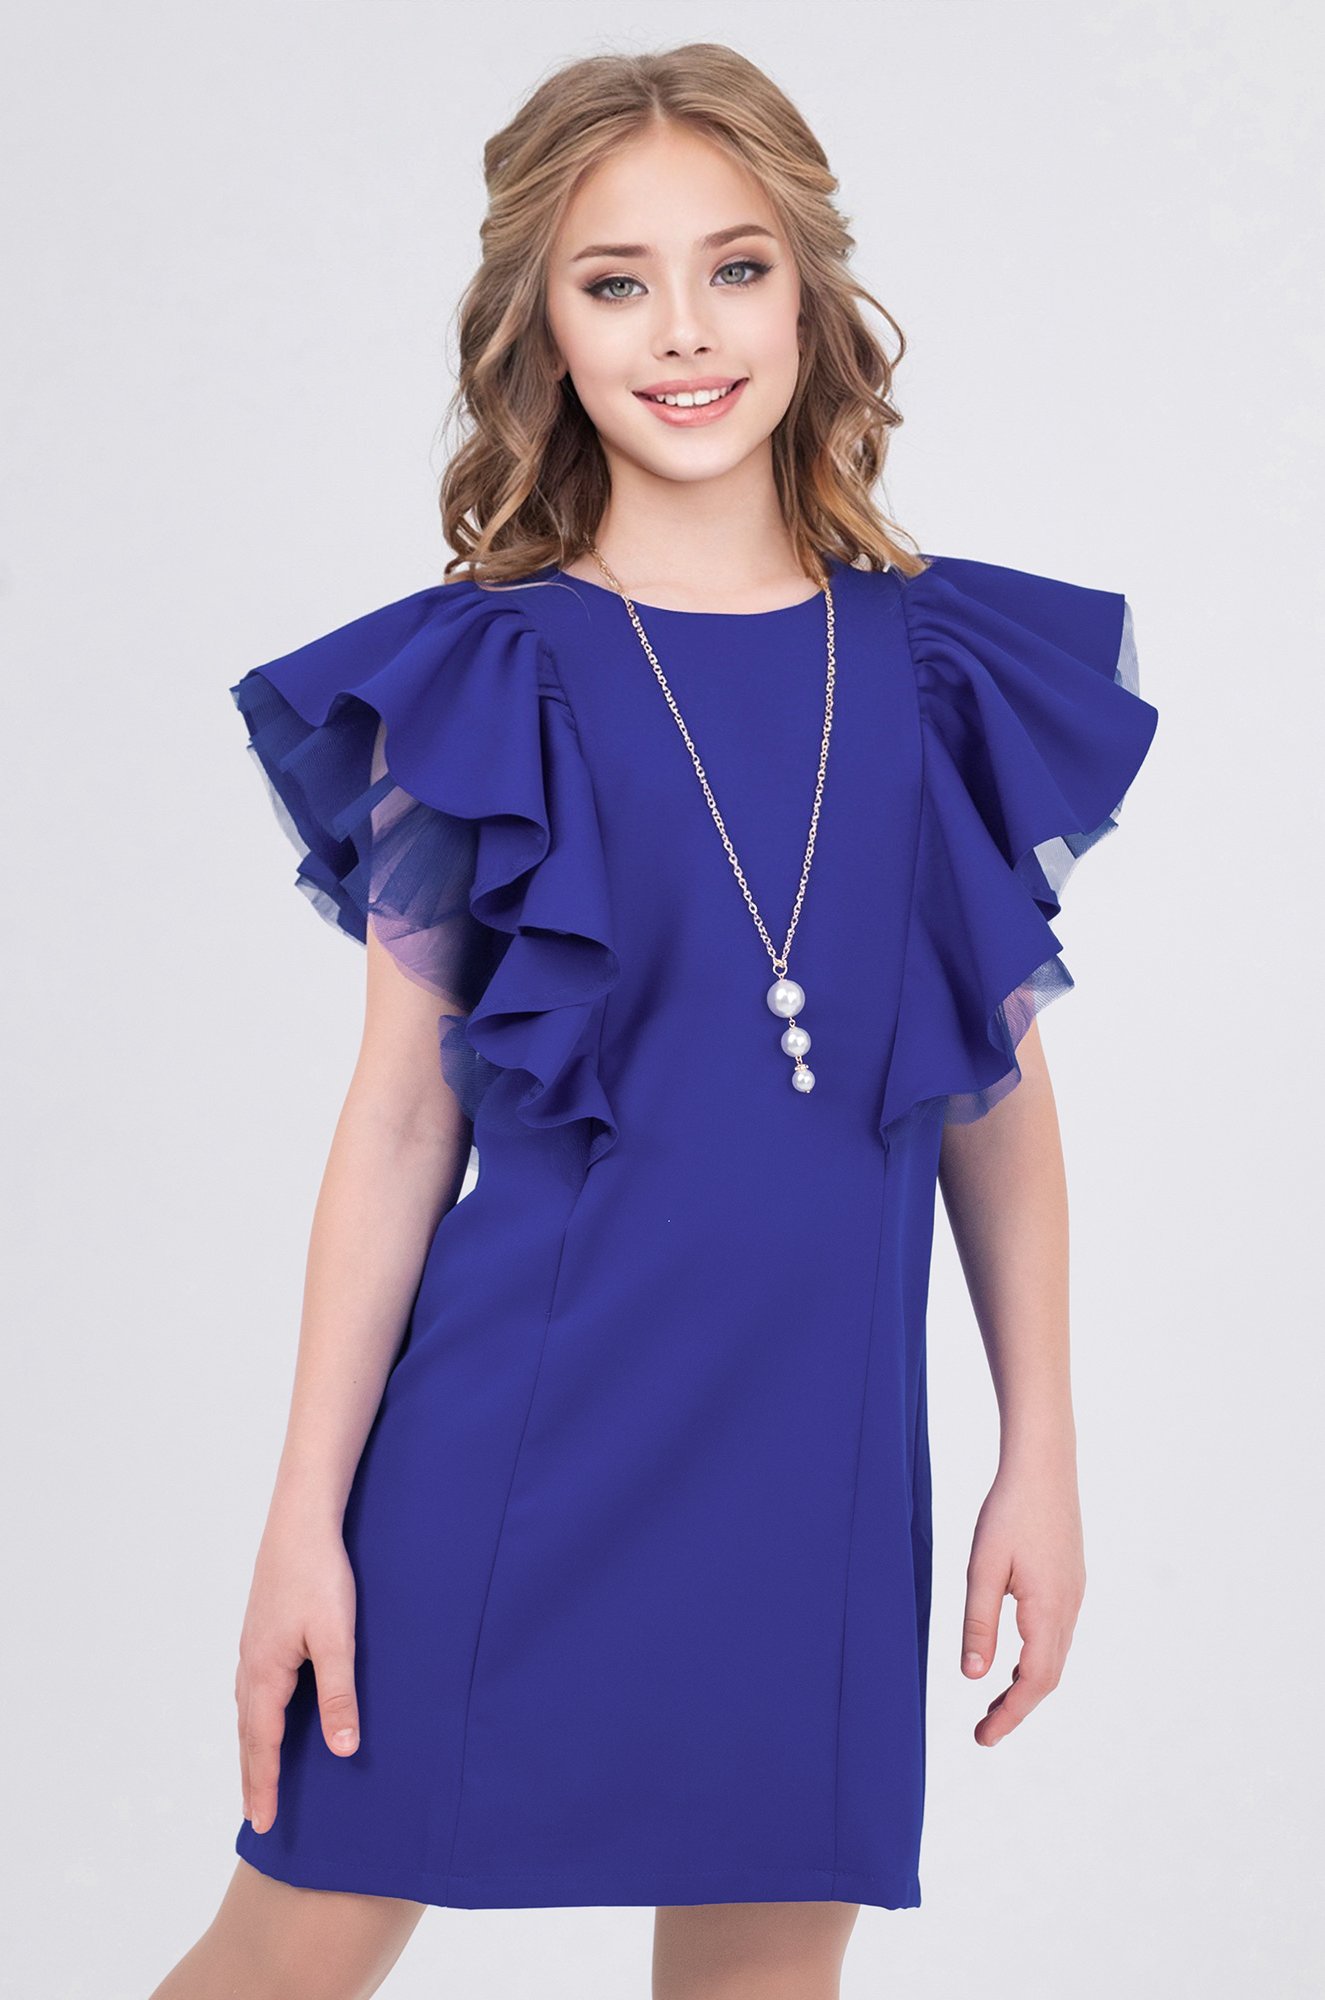 Купить детское платье, платья для девочек нарядные, платья для детей - steklorez69.ru